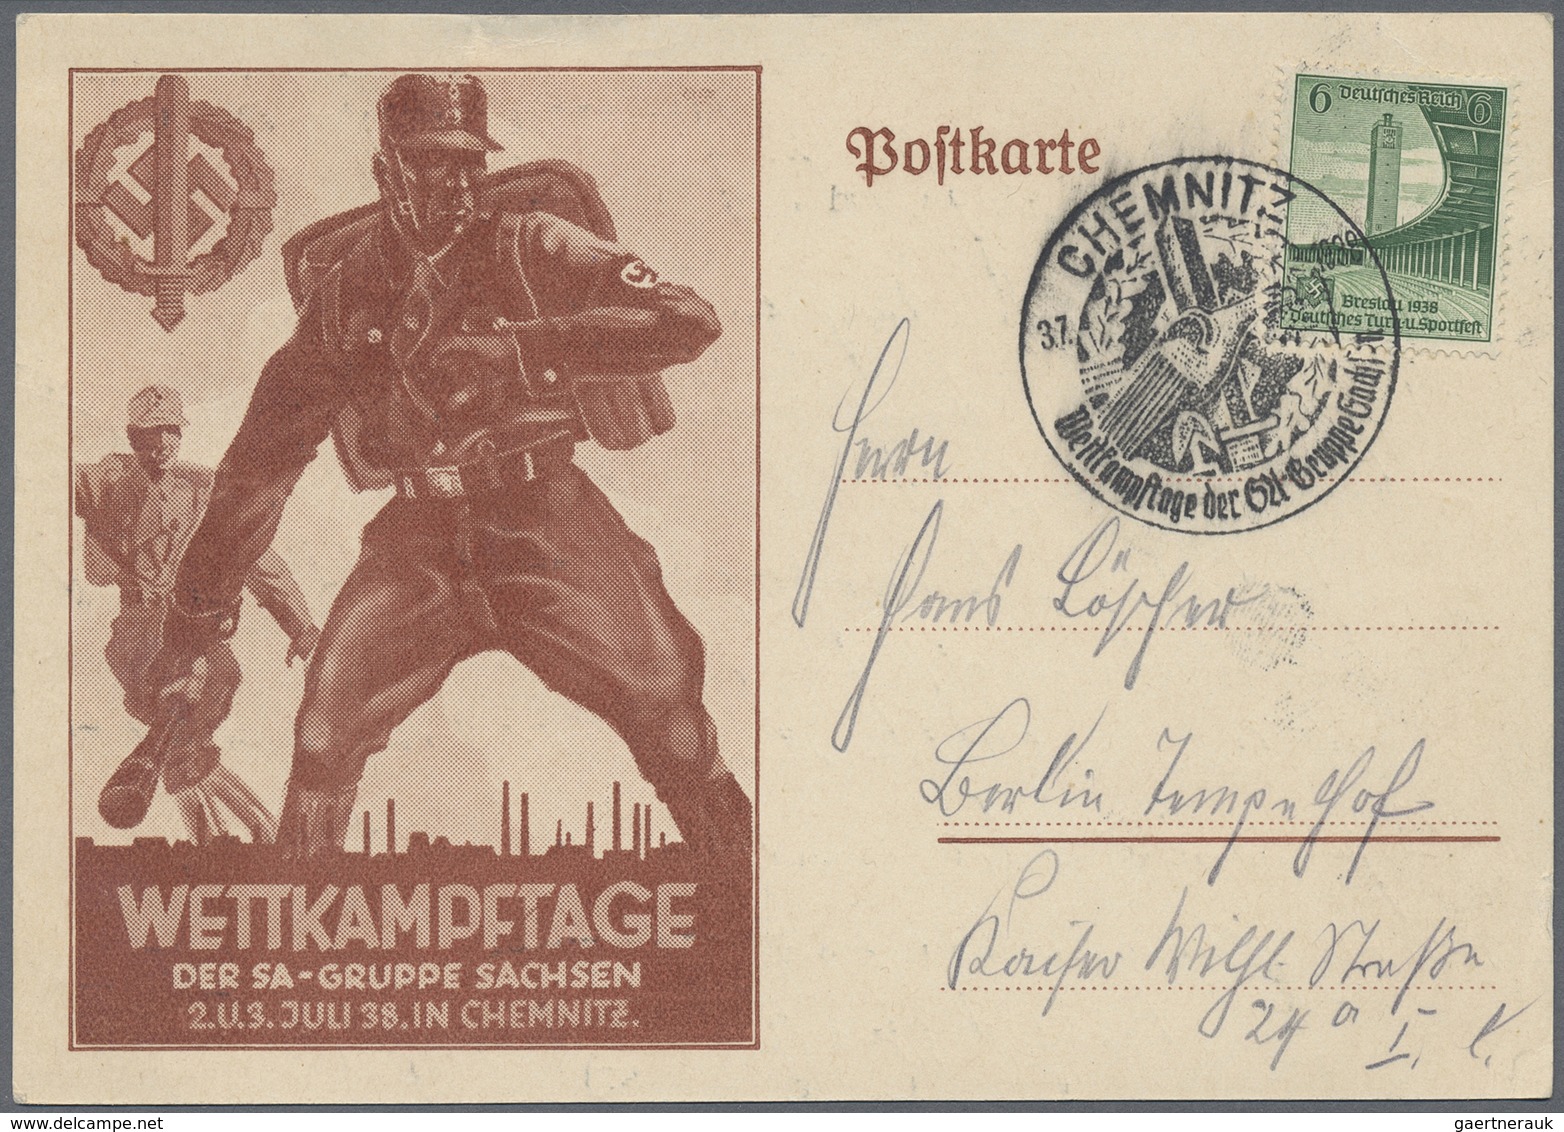 Ansichtskarten: Propaganda: 1938. Postkarte Mit Braunbild Vs. Links "Wettkampftage Der SA-Gruppe Sac - Parteien & Wahlen